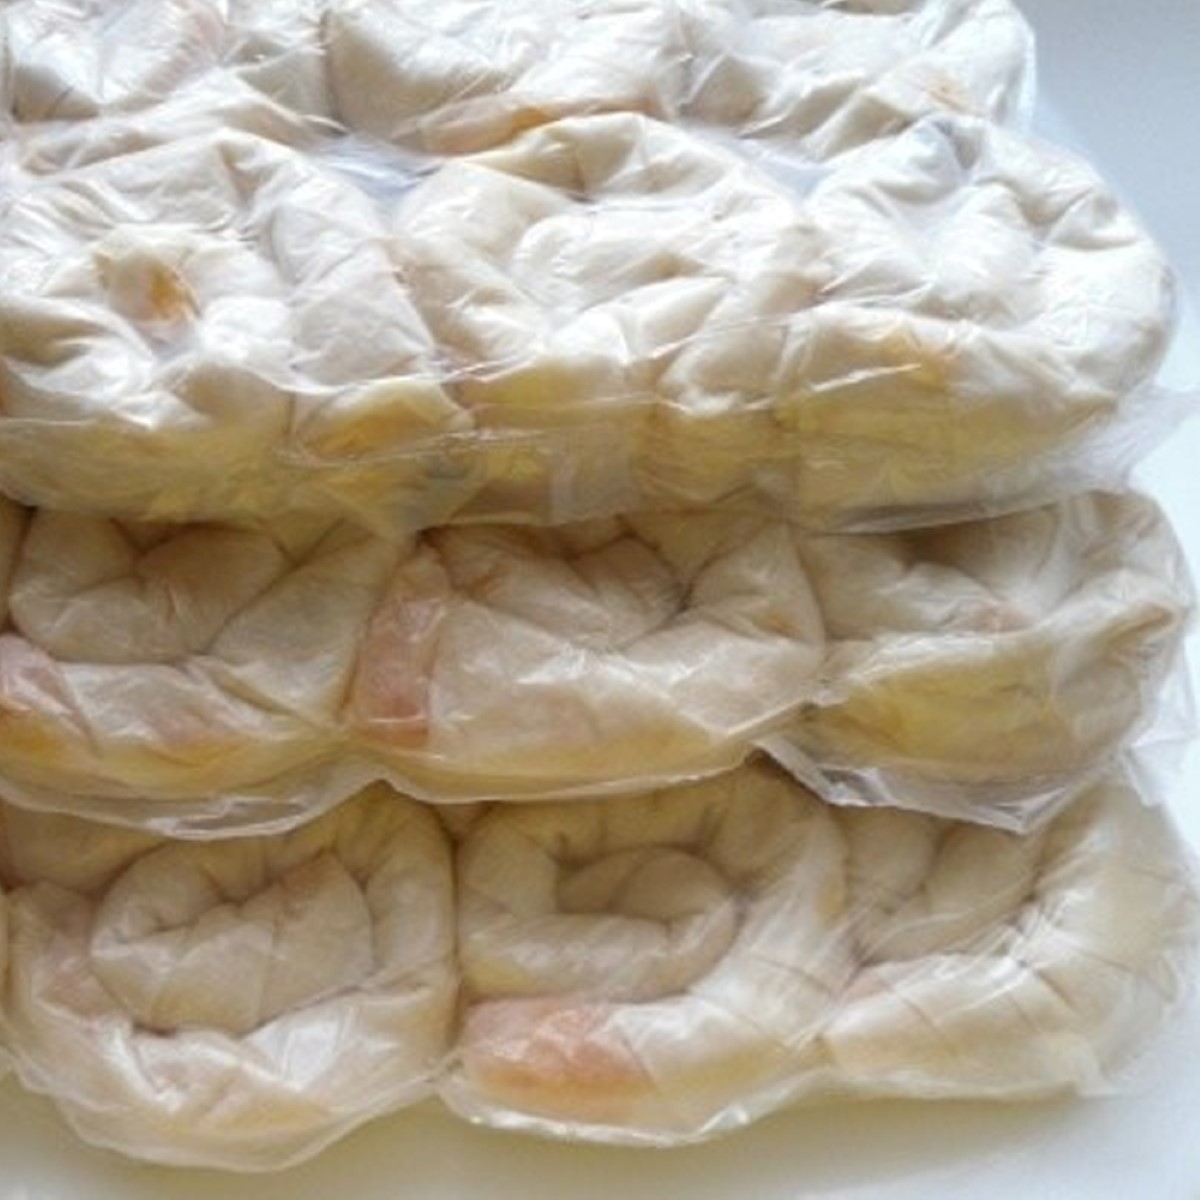 Dondurulmuş peynirli gül böreği 10 Kiloluk ambalajlarda Börsan marka gül böreği